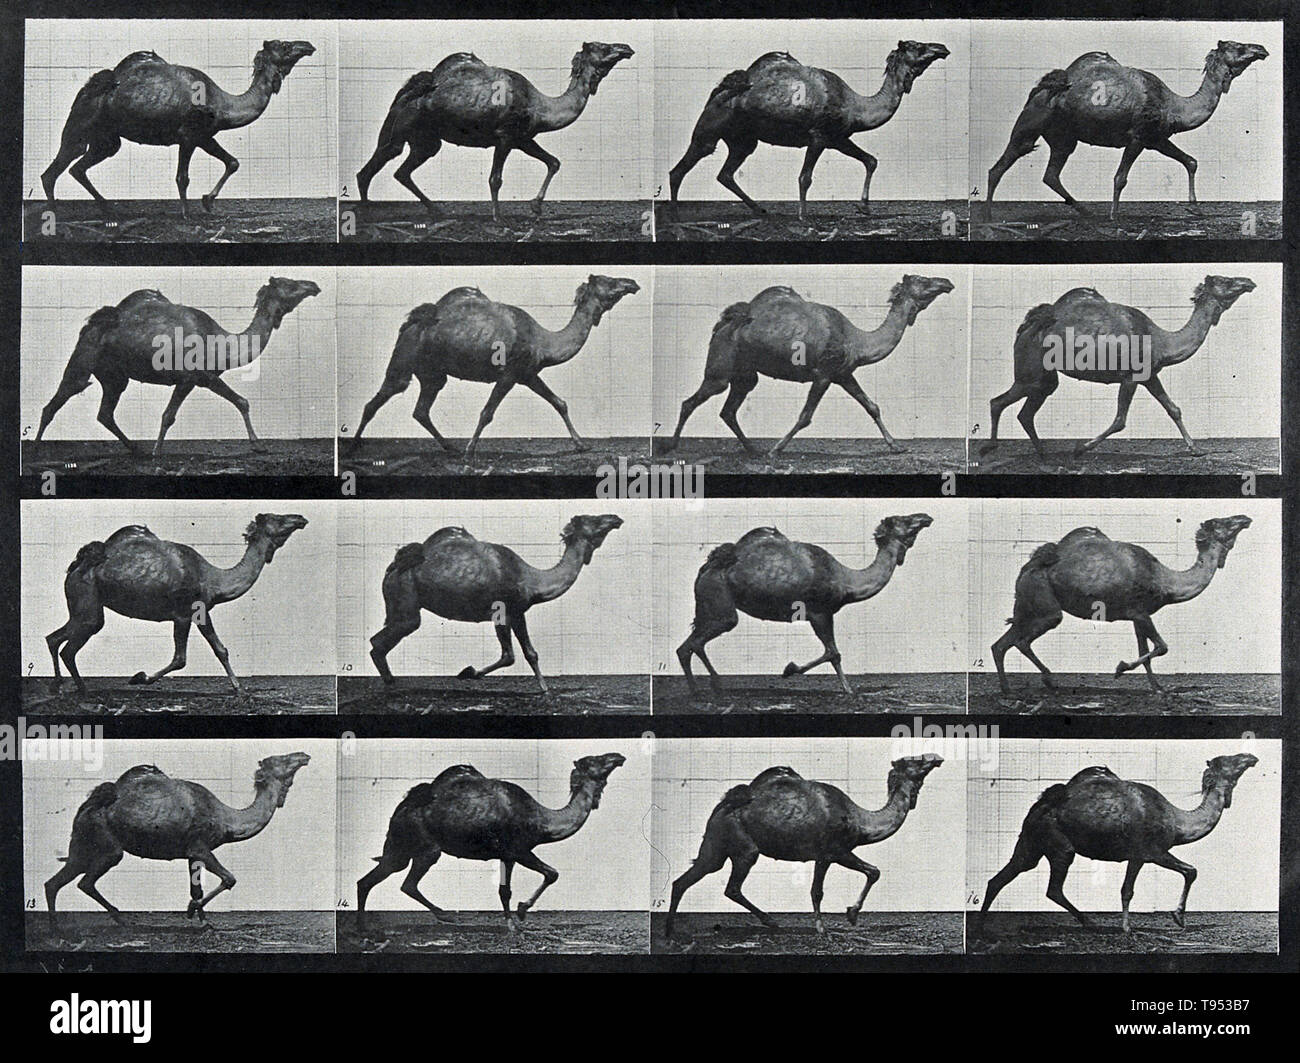 Arrêter-action des photographies d'un chameau fonctionnant par Eadweard Muybridge (1830-1904). Muybridge était un photographe anglais connu pour son travail de pionnier dans le domaine des études du mouvement photographique et cinématographique en projection. Son travail de pionnier sur la traction animale en 1877 et 1878 utilisé plusieurs caméras pour capter les mouvements dans l'action-stop des photographies. Dans les années 1880, il est entré dans une période très productive à l'Université de Pennsylvanie à Philadelphie, produisant plus de 100 000 images d'animaux et l'homme en mouvement, de capturer ce que l'oeil humain ne peut distinguer que des mouvements séparés. Banque D'Images